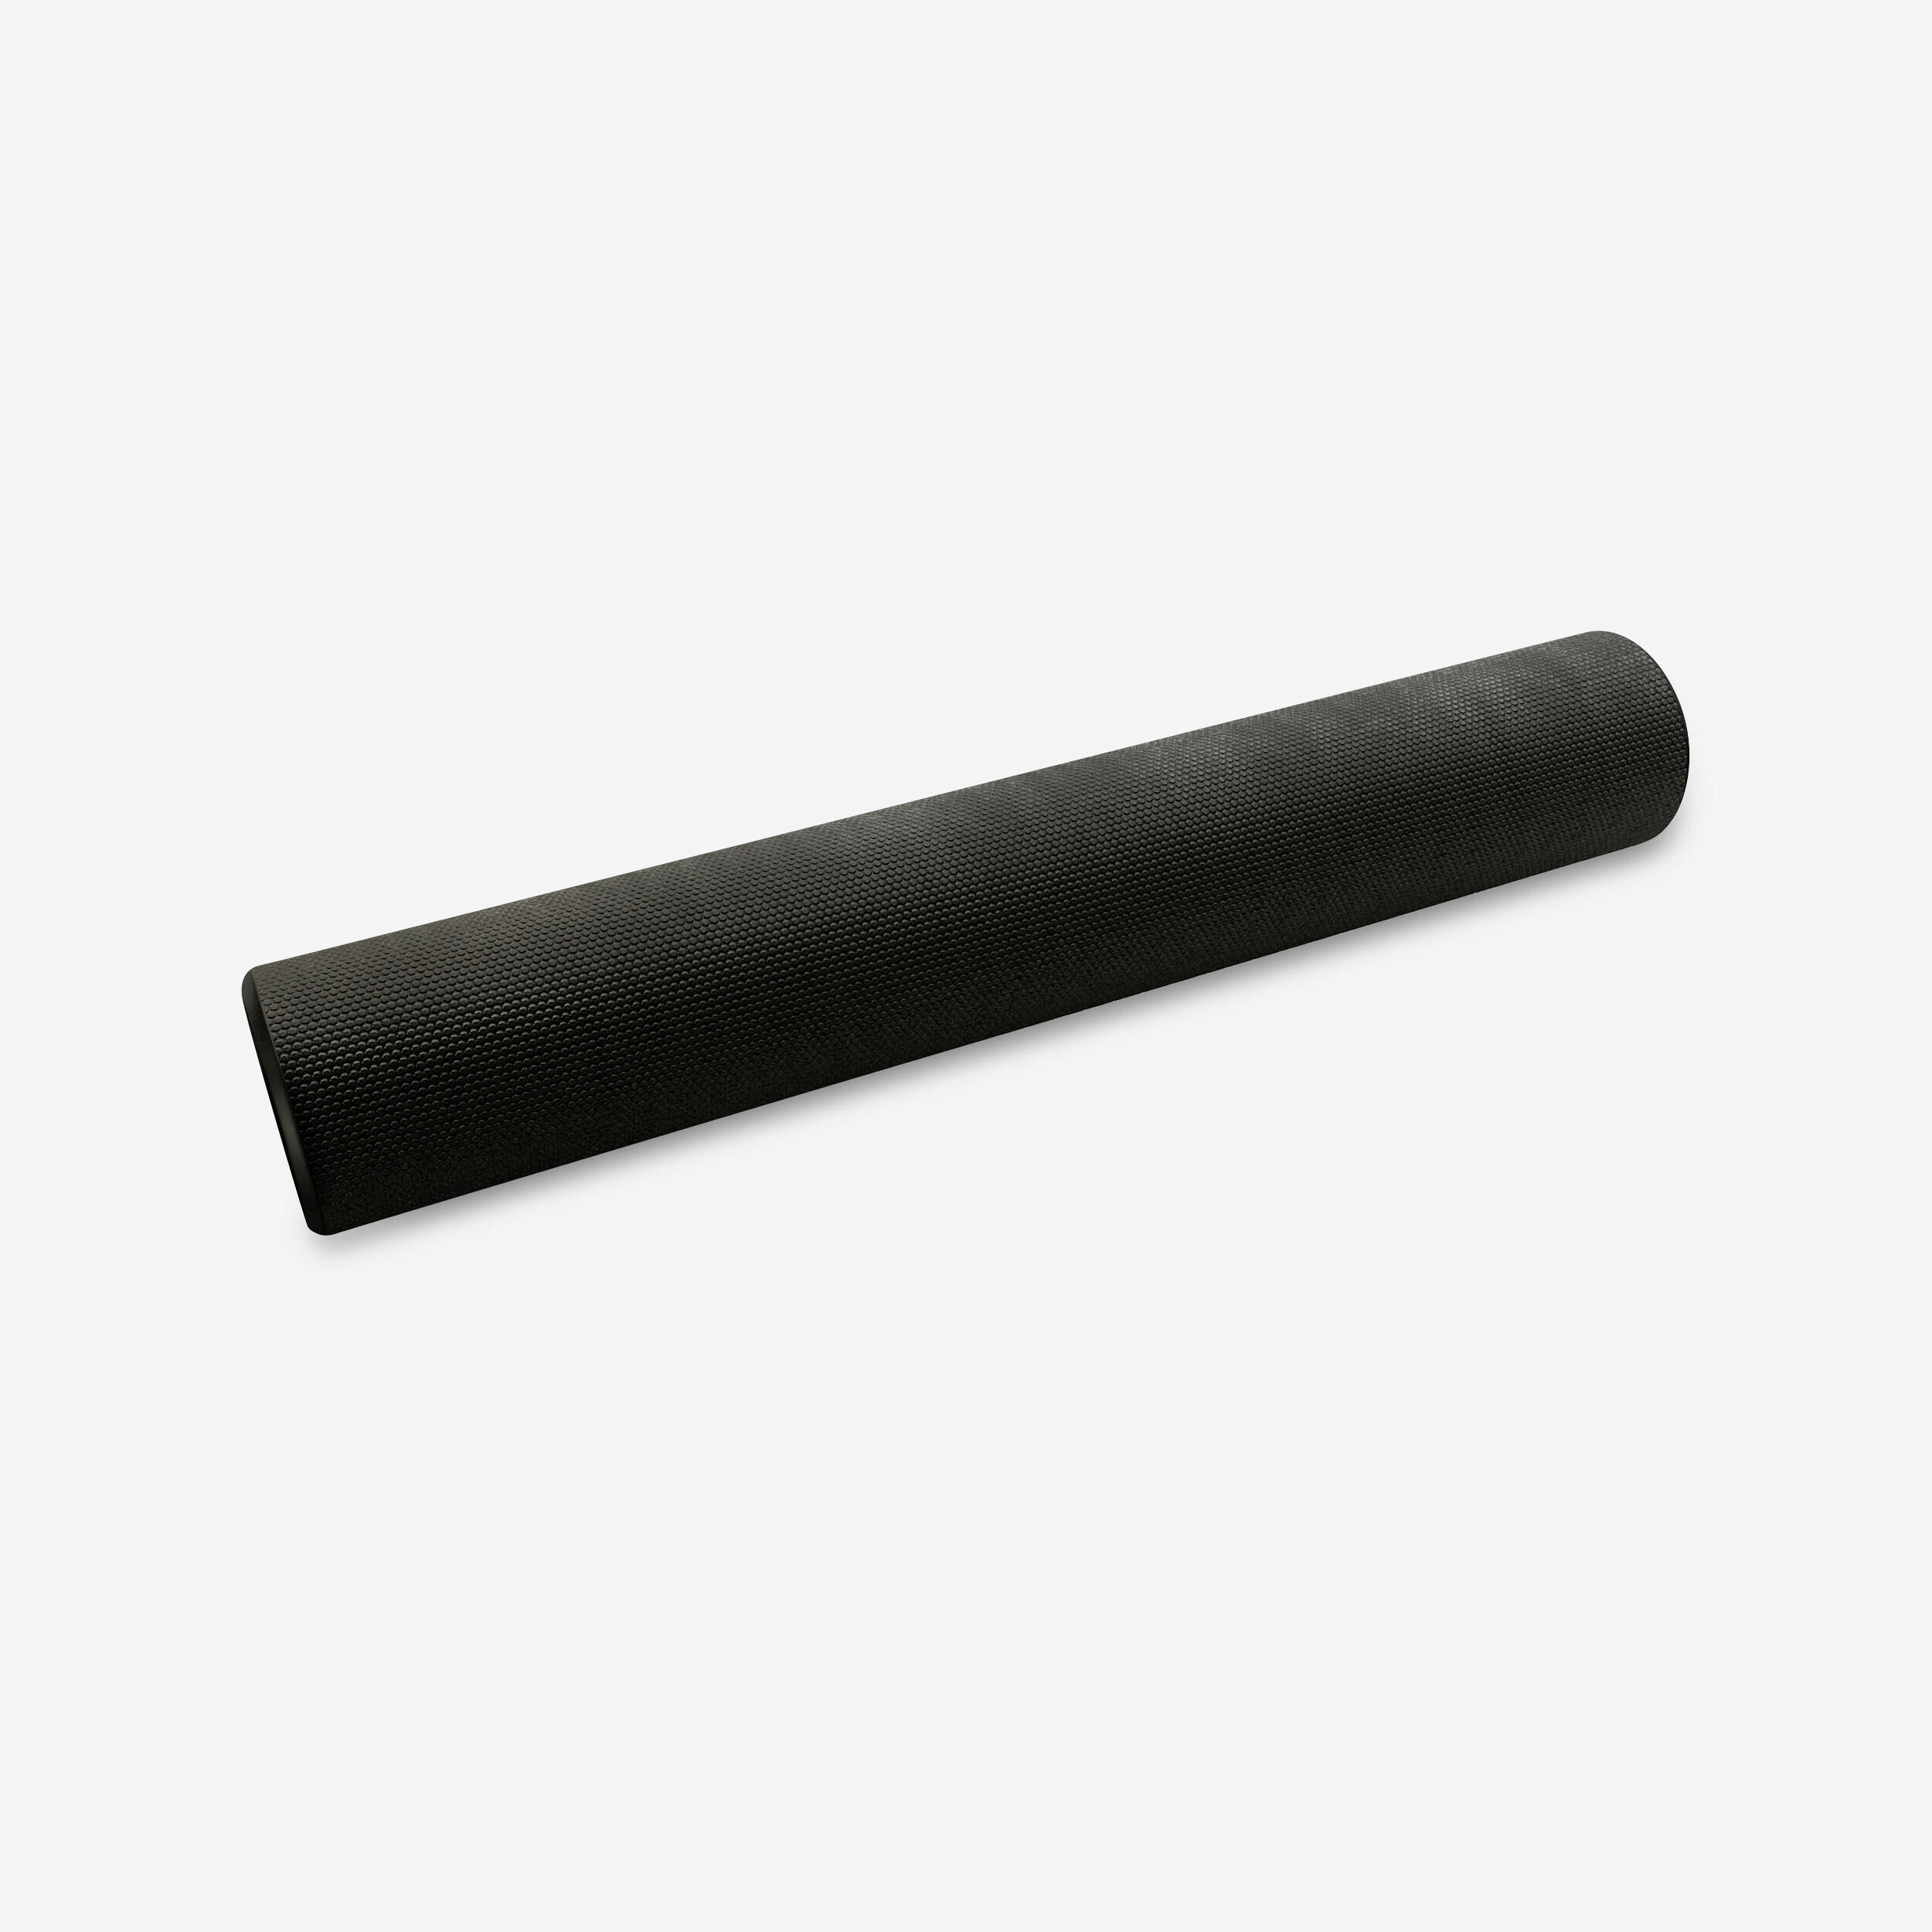 DOMYOS Fitness Foam Roller Length 90 cm Diameter 15 cm - Black